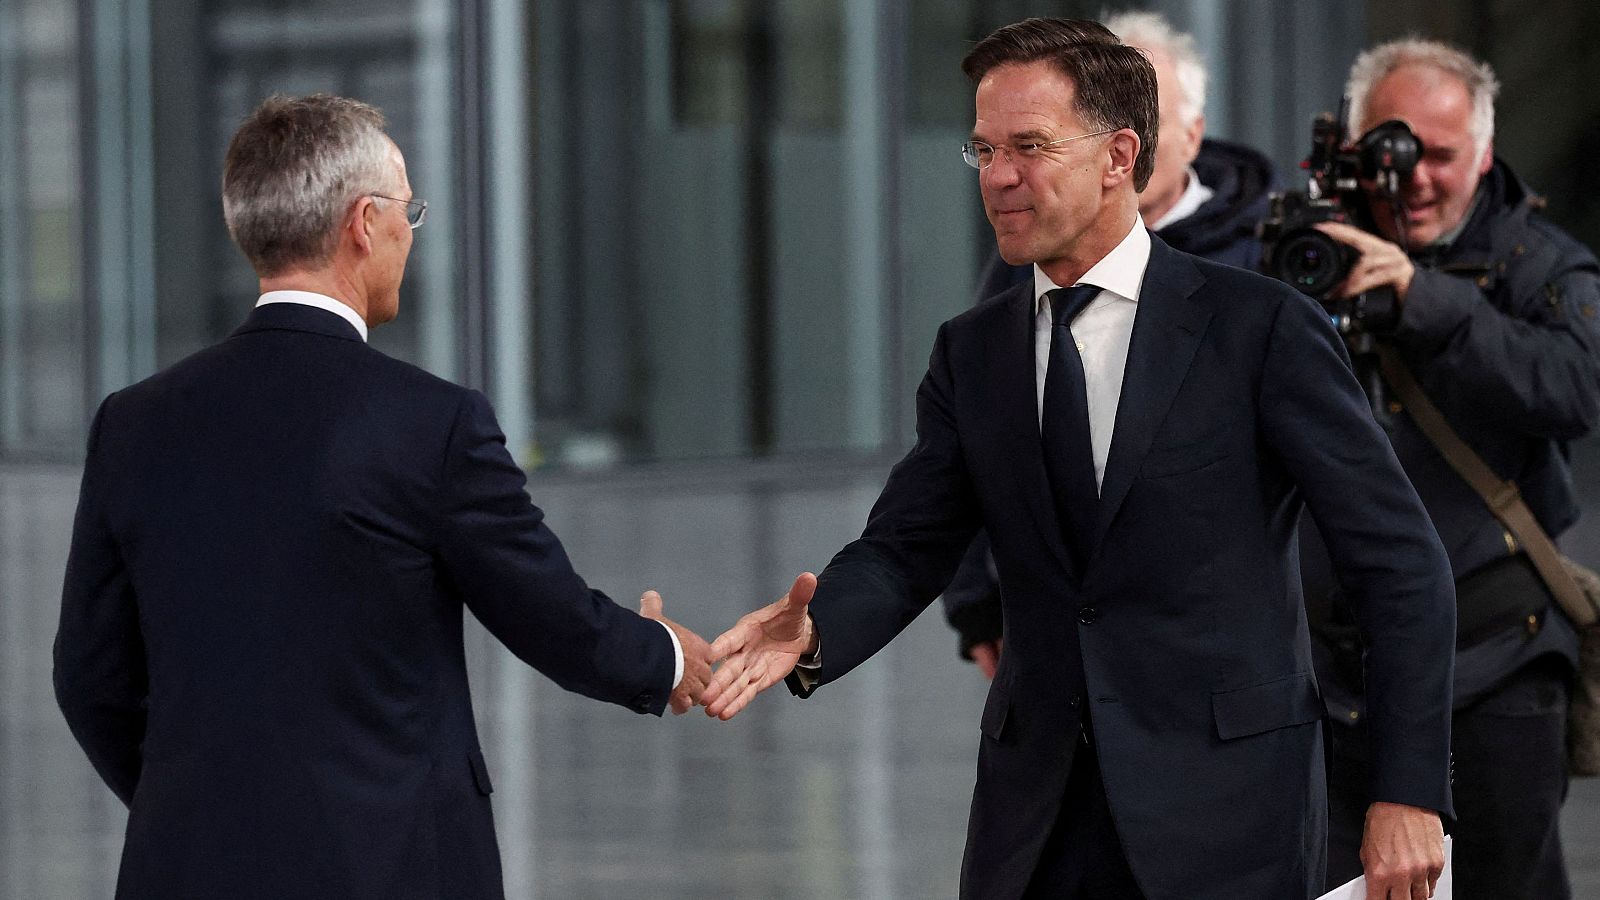 Rutte avanza en su carrera para convertirse en secretario general de la OTAN tras la retirada de Iohannis